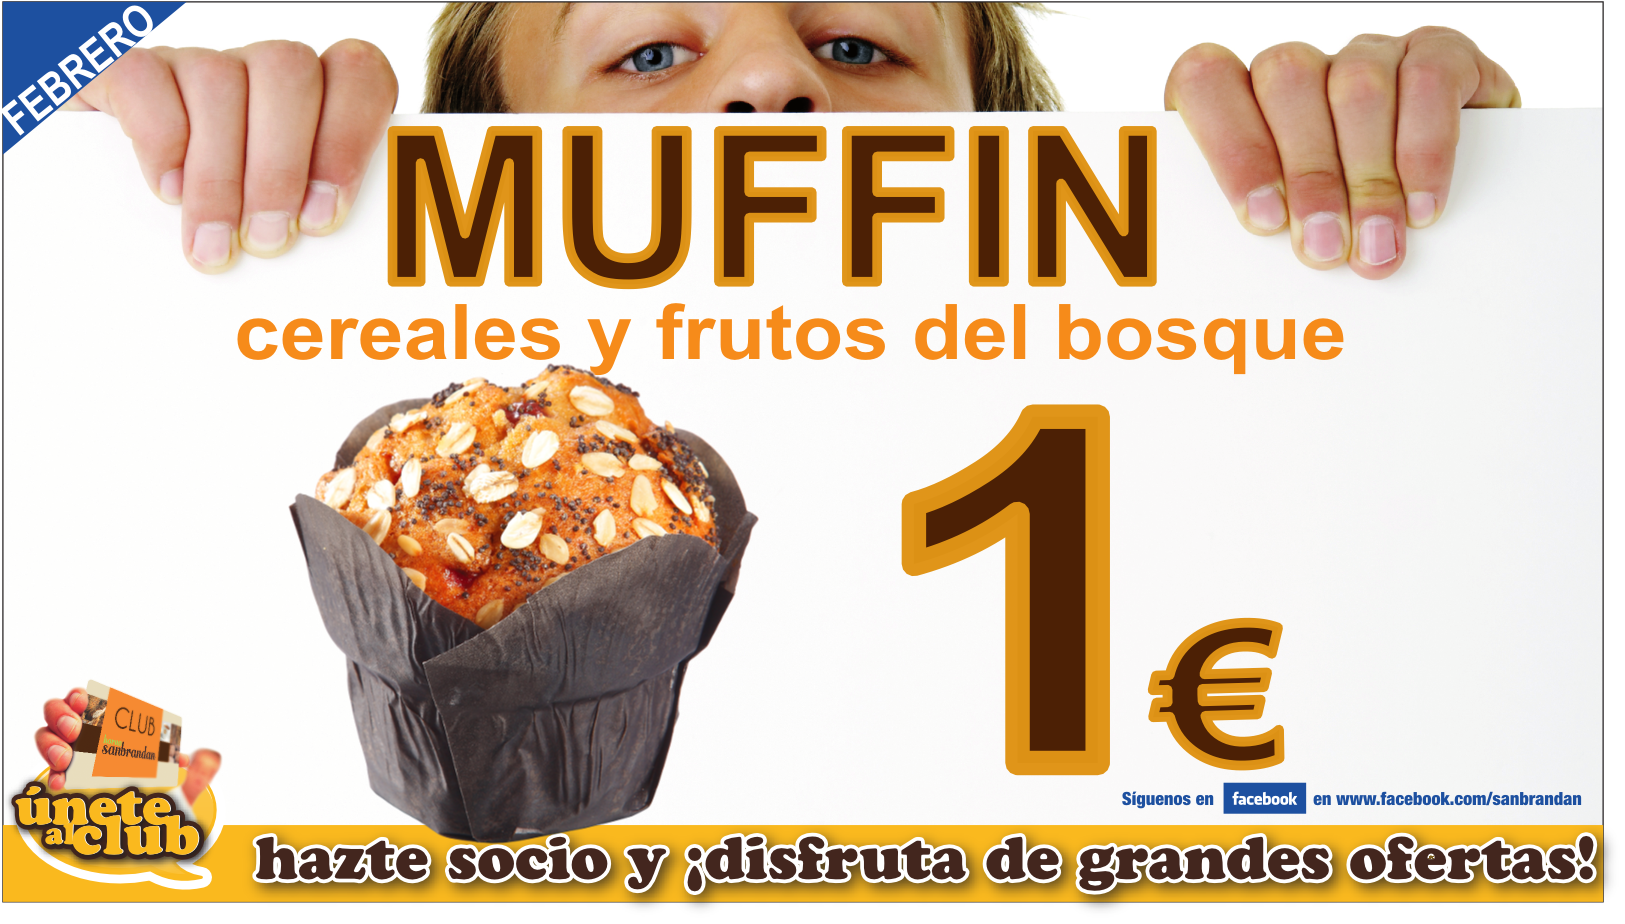 Muffin de cereales y frutos del bosque 1 €